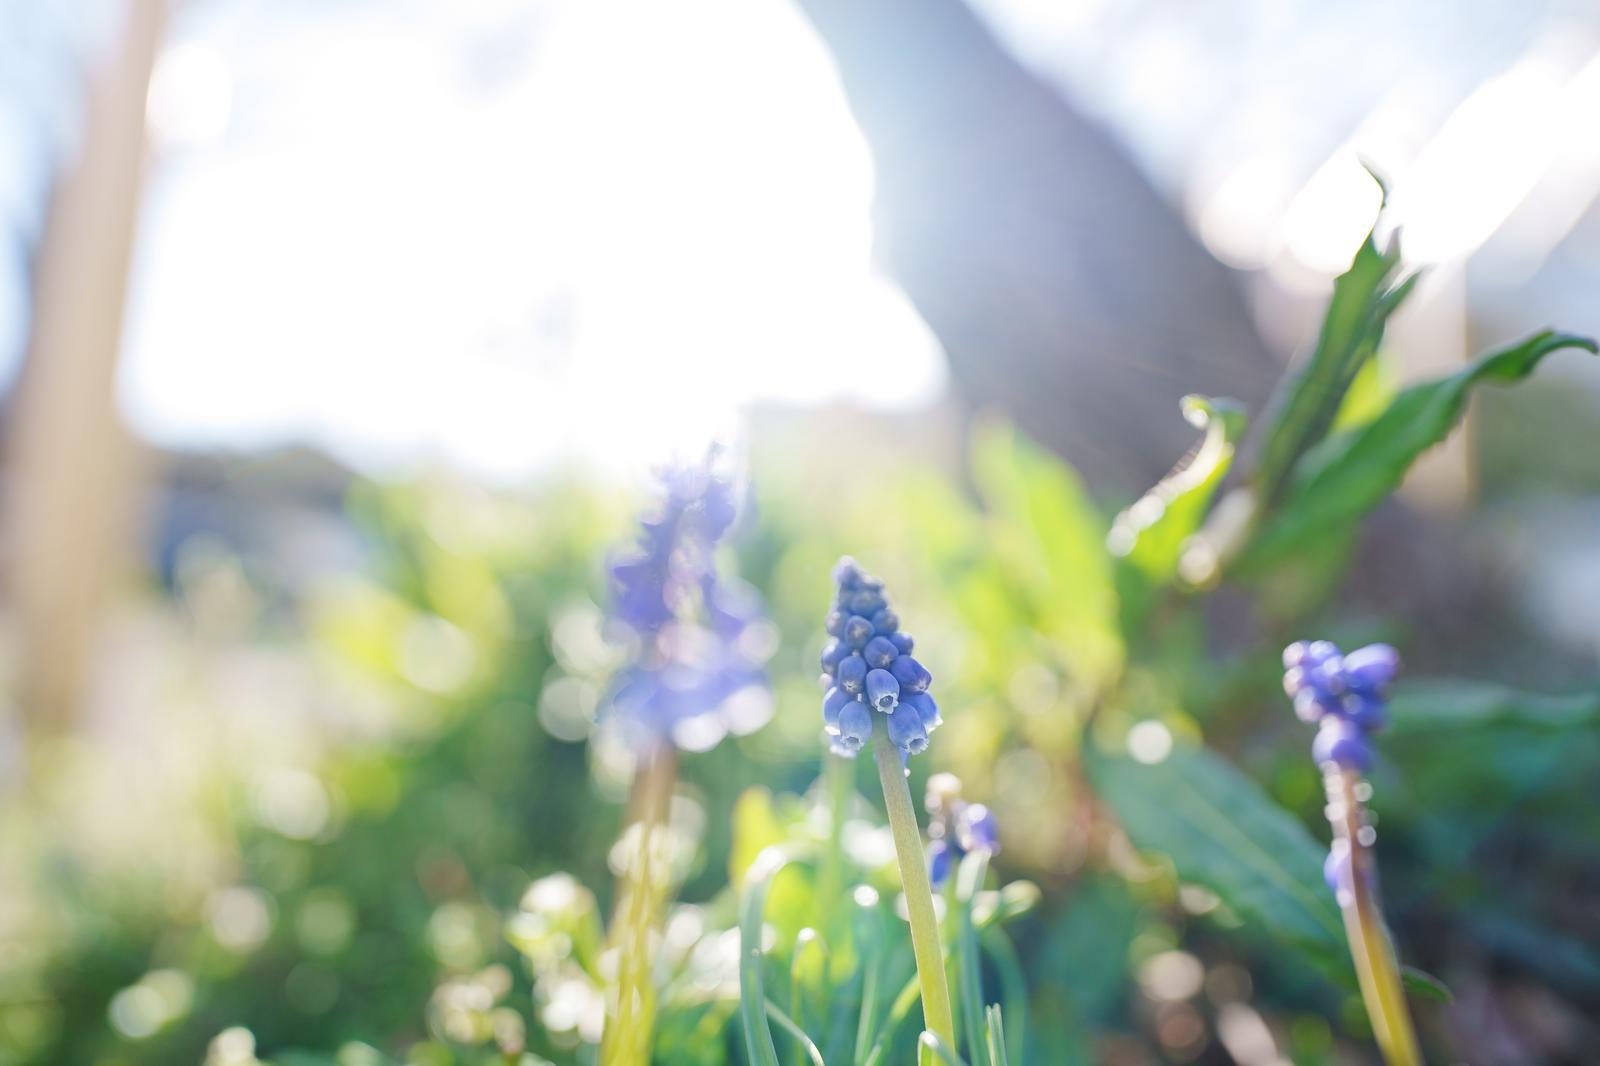 「日差しを浴びた青いムスカリが咲いている様子」の写真